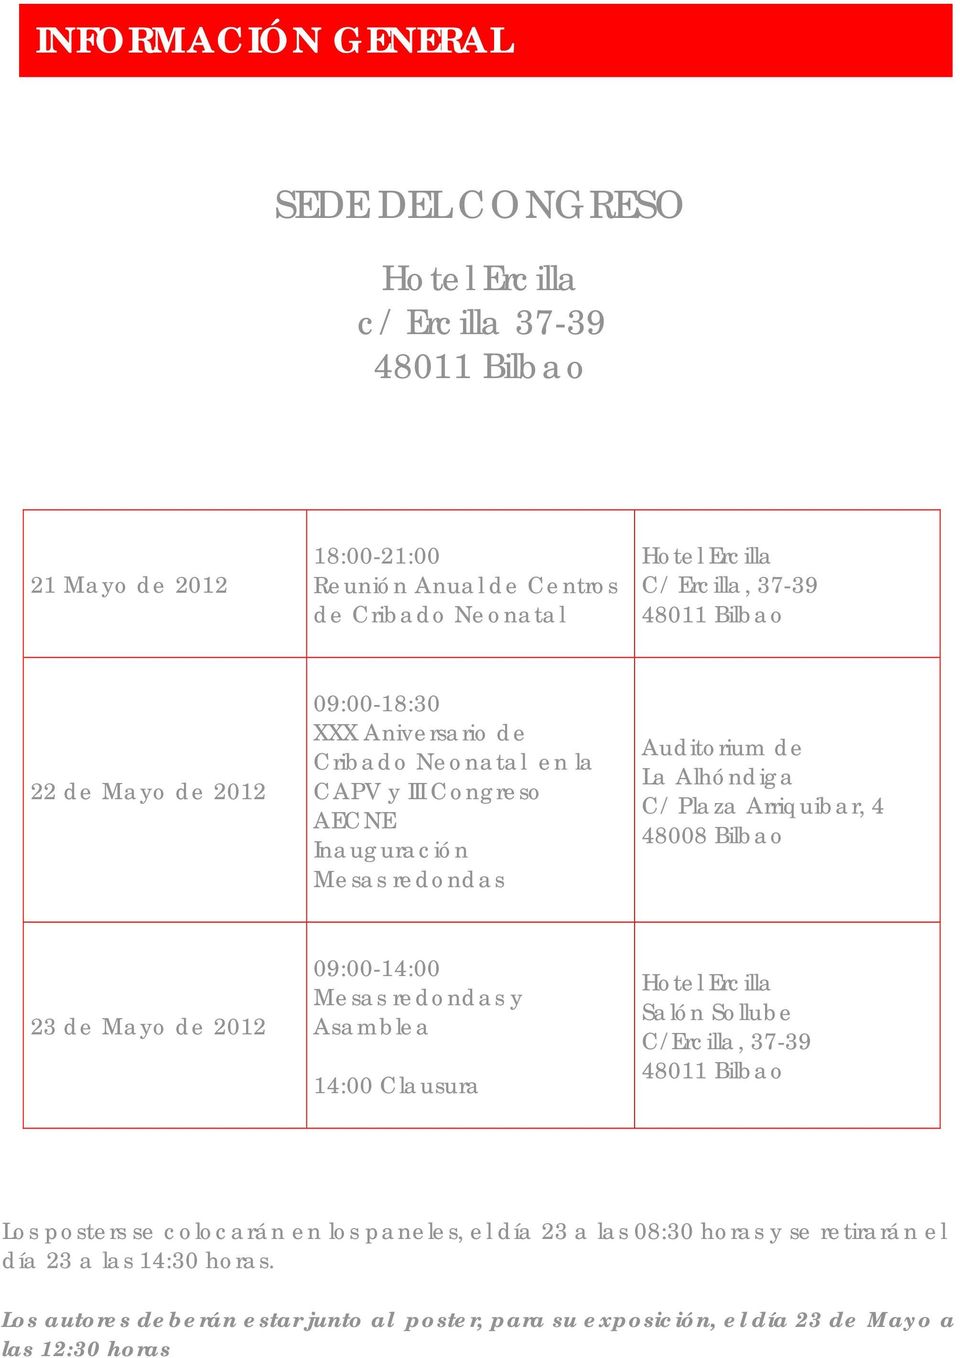 Arriquibar, 4 48008 Bilbao 23 de Mayo de 2012 09:00-14:00 Mesas redondas y Asamblea 14:00 Clausura Hotel Ercilla Salón Sollube C/Ercilla, 37-39 48011 Bilbao Los posters se colocarán